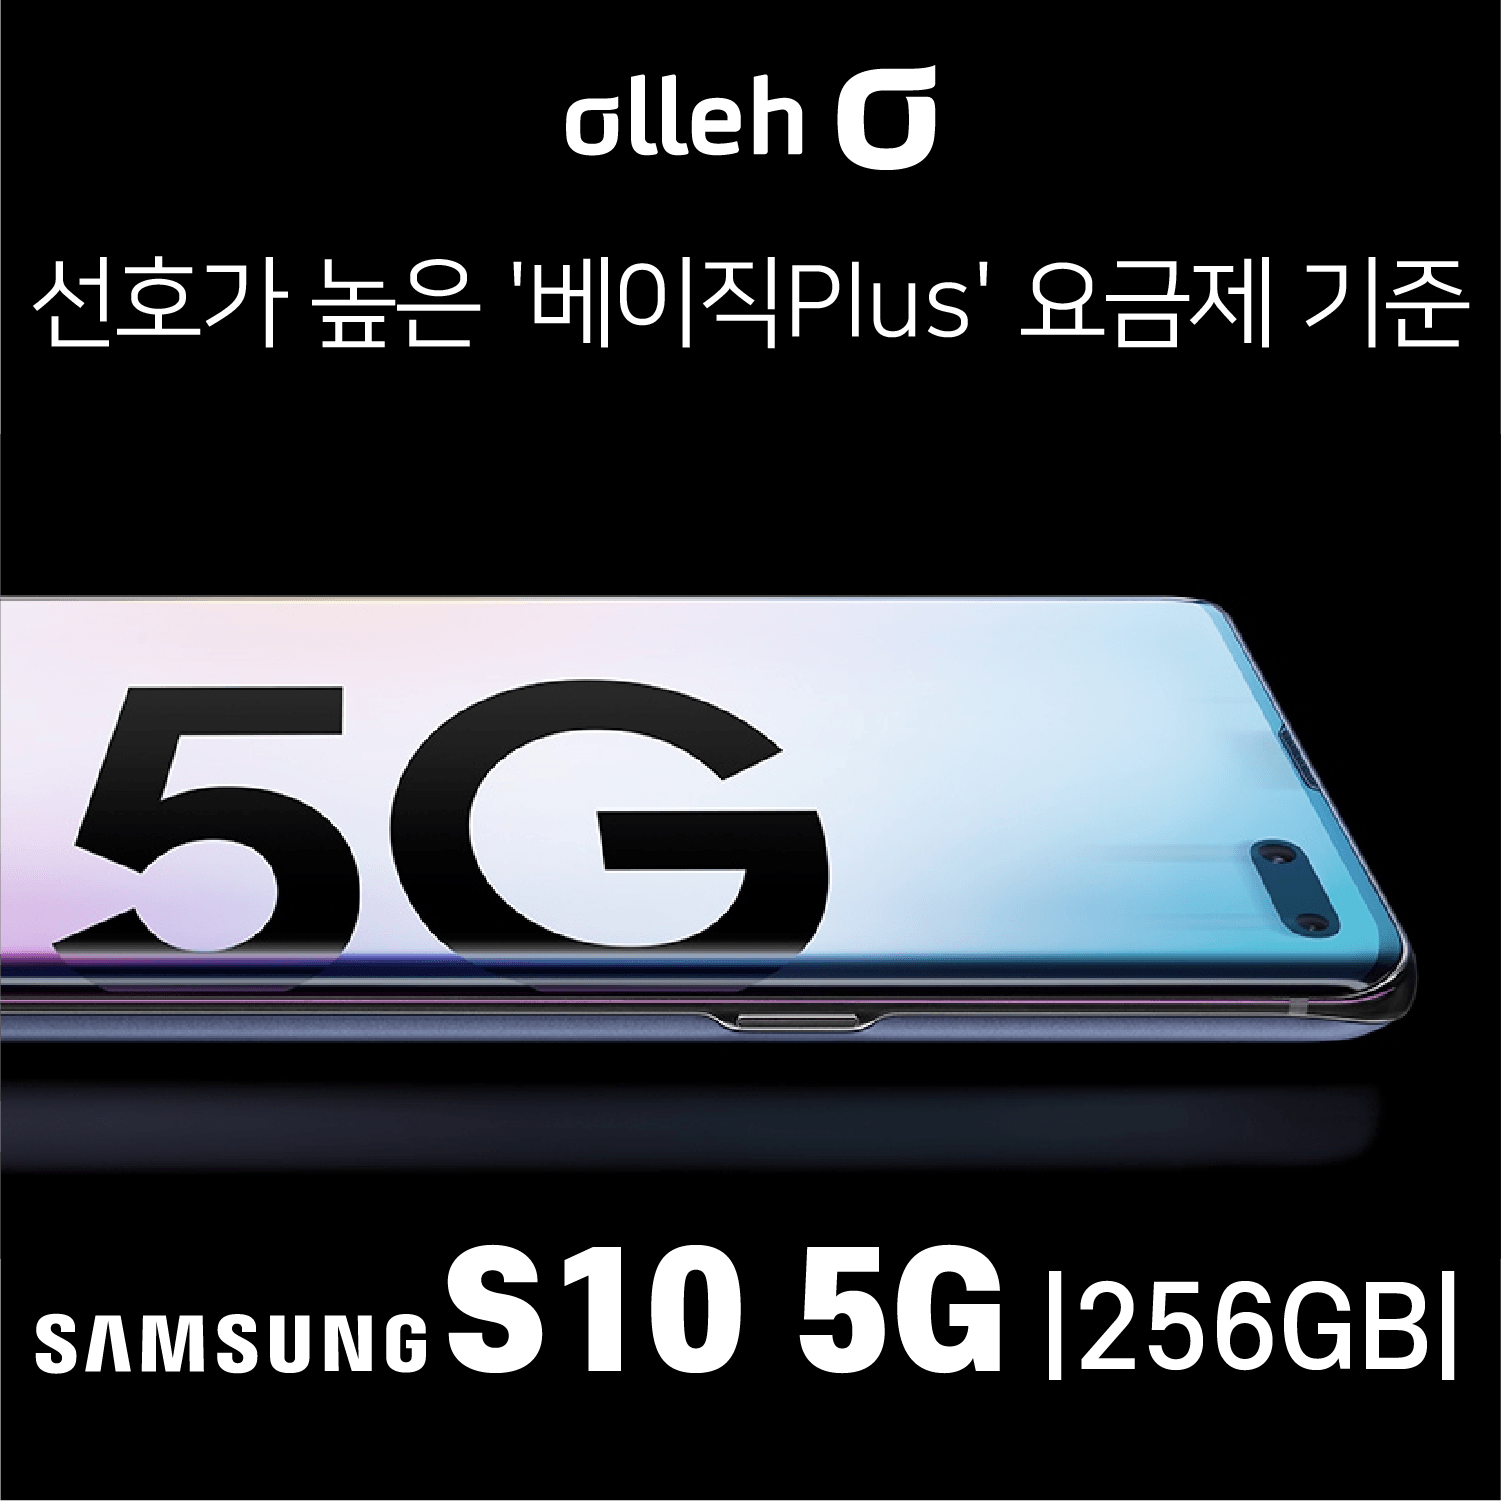 KT 삼성 S10. 5G. 256GB _ 가장 인기 많은 베이직 요금제 선택인데 이 가격이라고!, 번호이동 